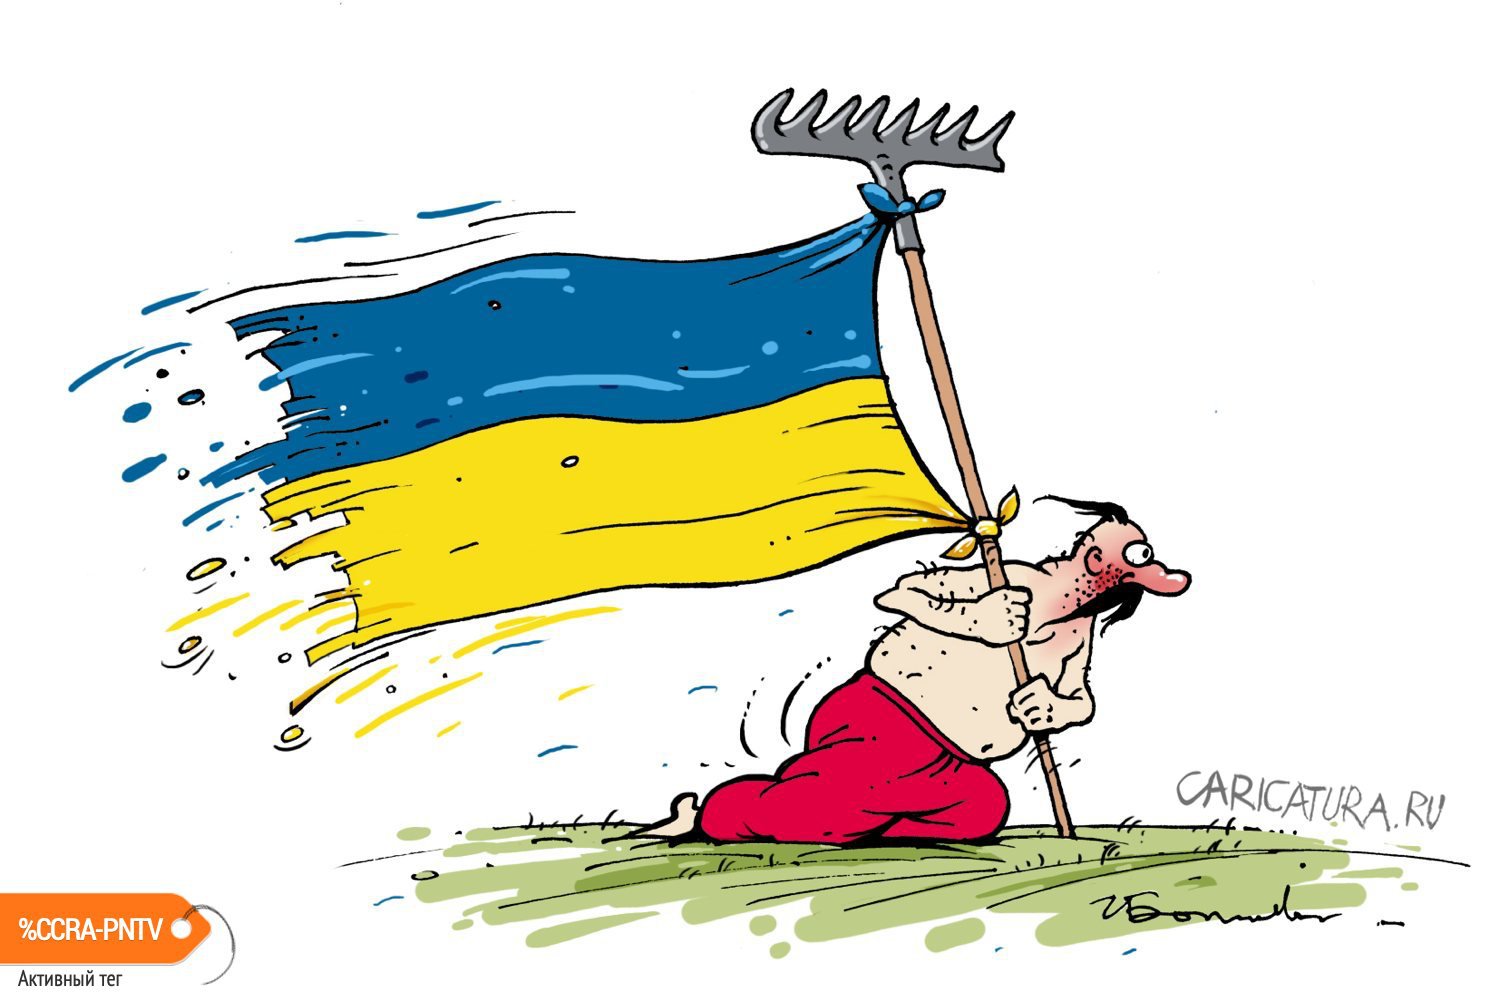 Пере на укр. Хохлы карикатуры. Карикатуры на украинцев. Карикатуры на Украину. Шаржи про Украину.